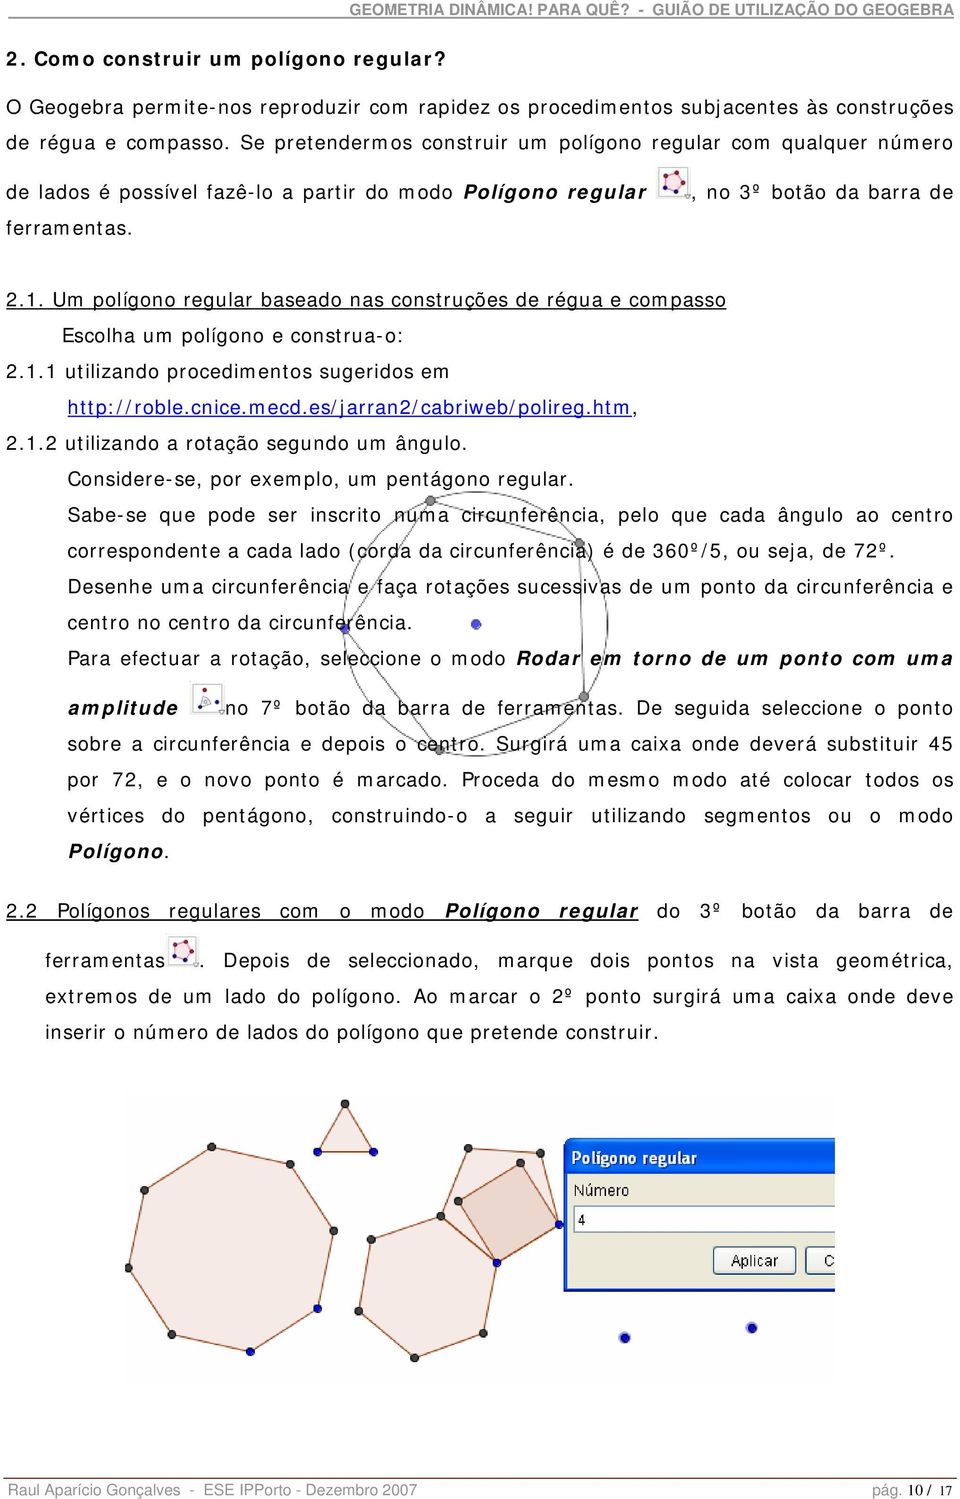 Um polígono regular baseado nas construções de régua e compasso Escolha um polígono e construa-o: 2.1.1 utilizando procedimentos sugeridos em http://roble.cnice.mecd.es/jarran2/cabriweb/polireg.